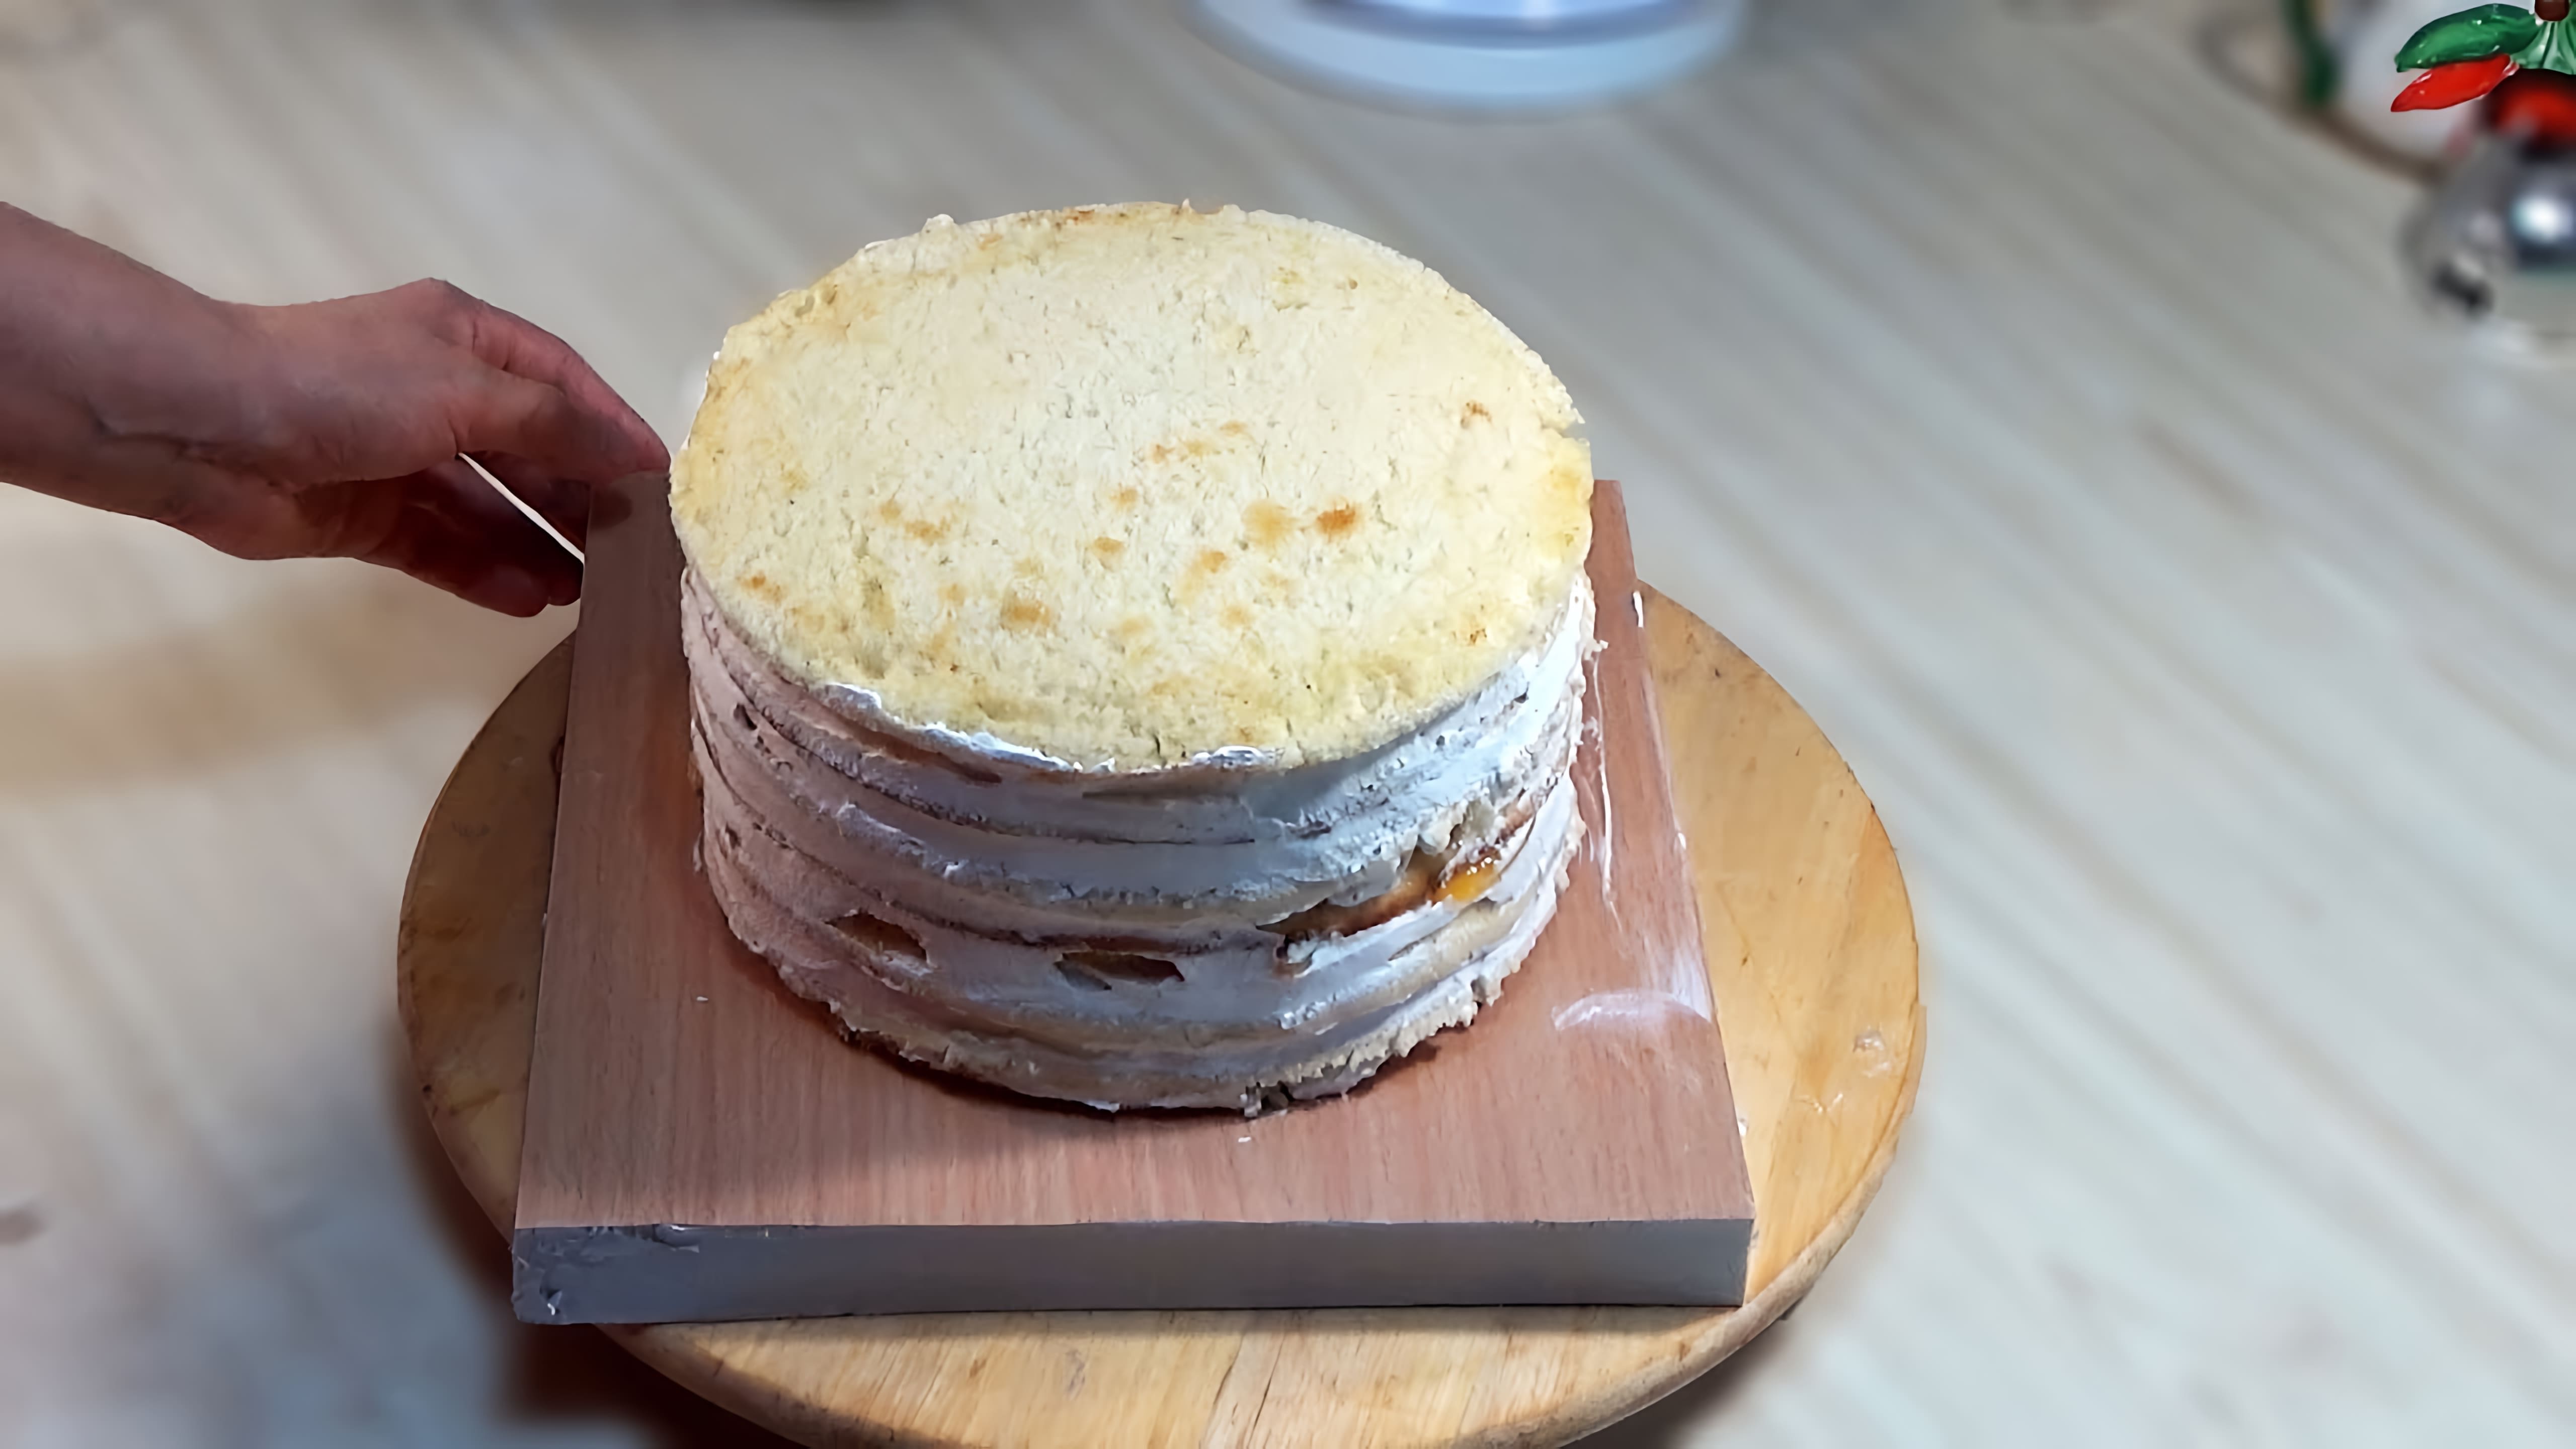 В этом видео демонстрируется процесс приготовления торта "Молочная девочка" с йогуртовым кремом и фруктами